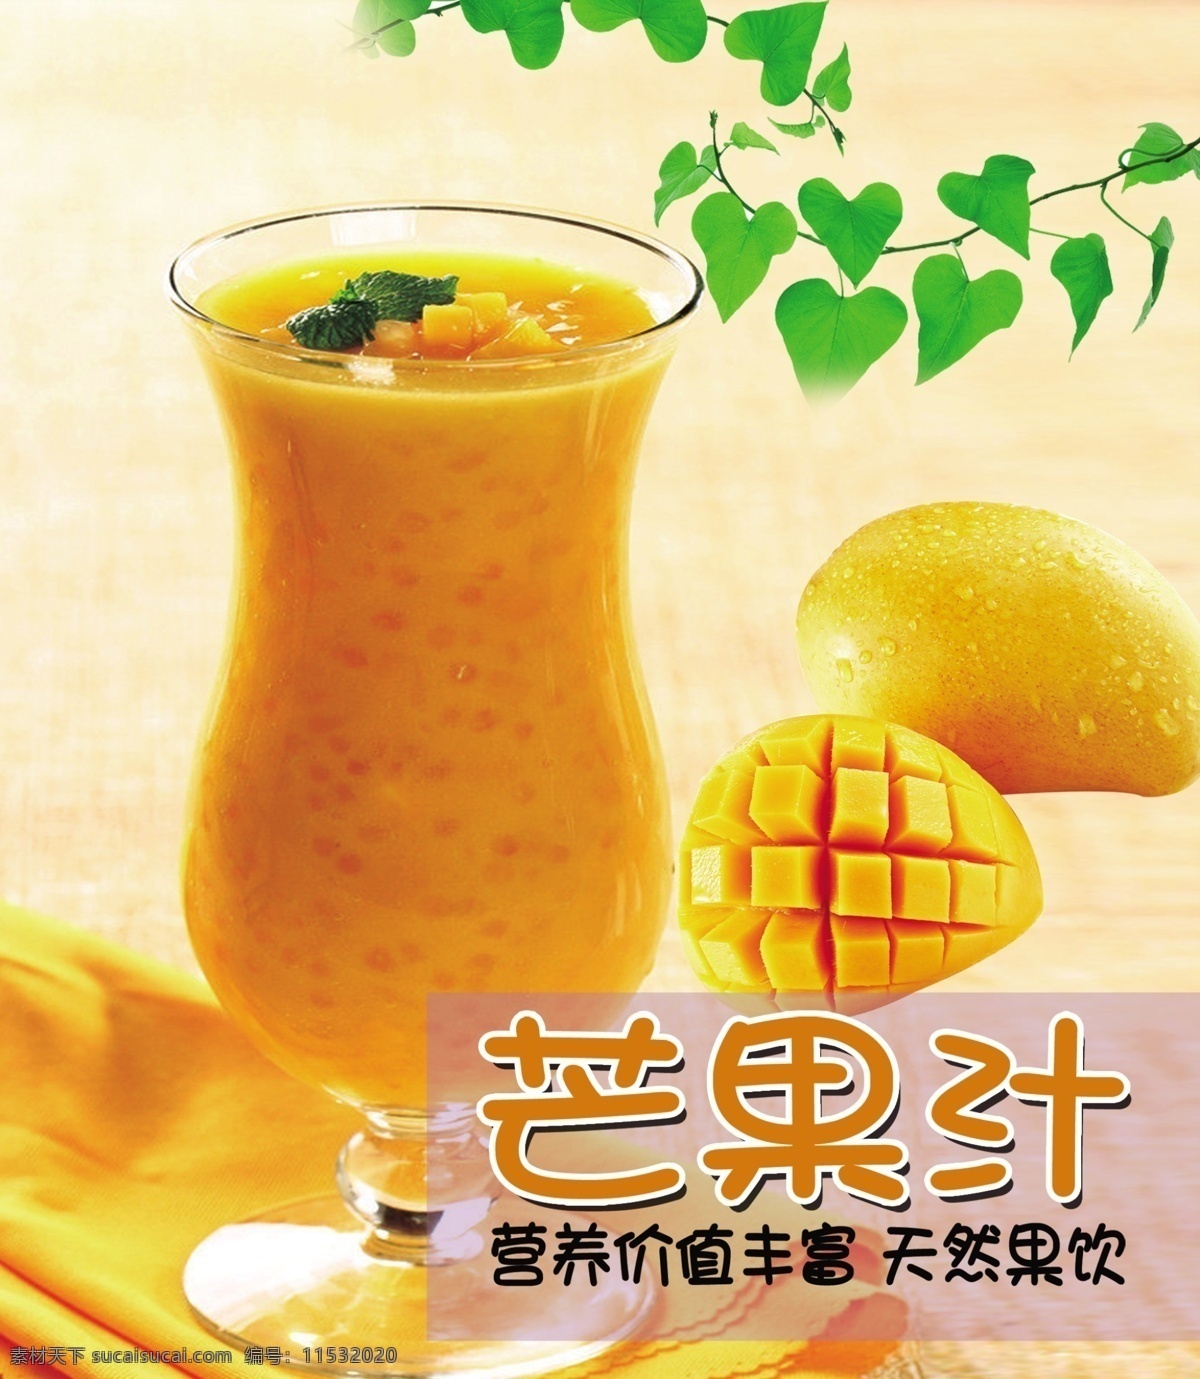 芒果汁海报 芒果汁 水果海报 鲜艳背景 芒果 果汁饮料